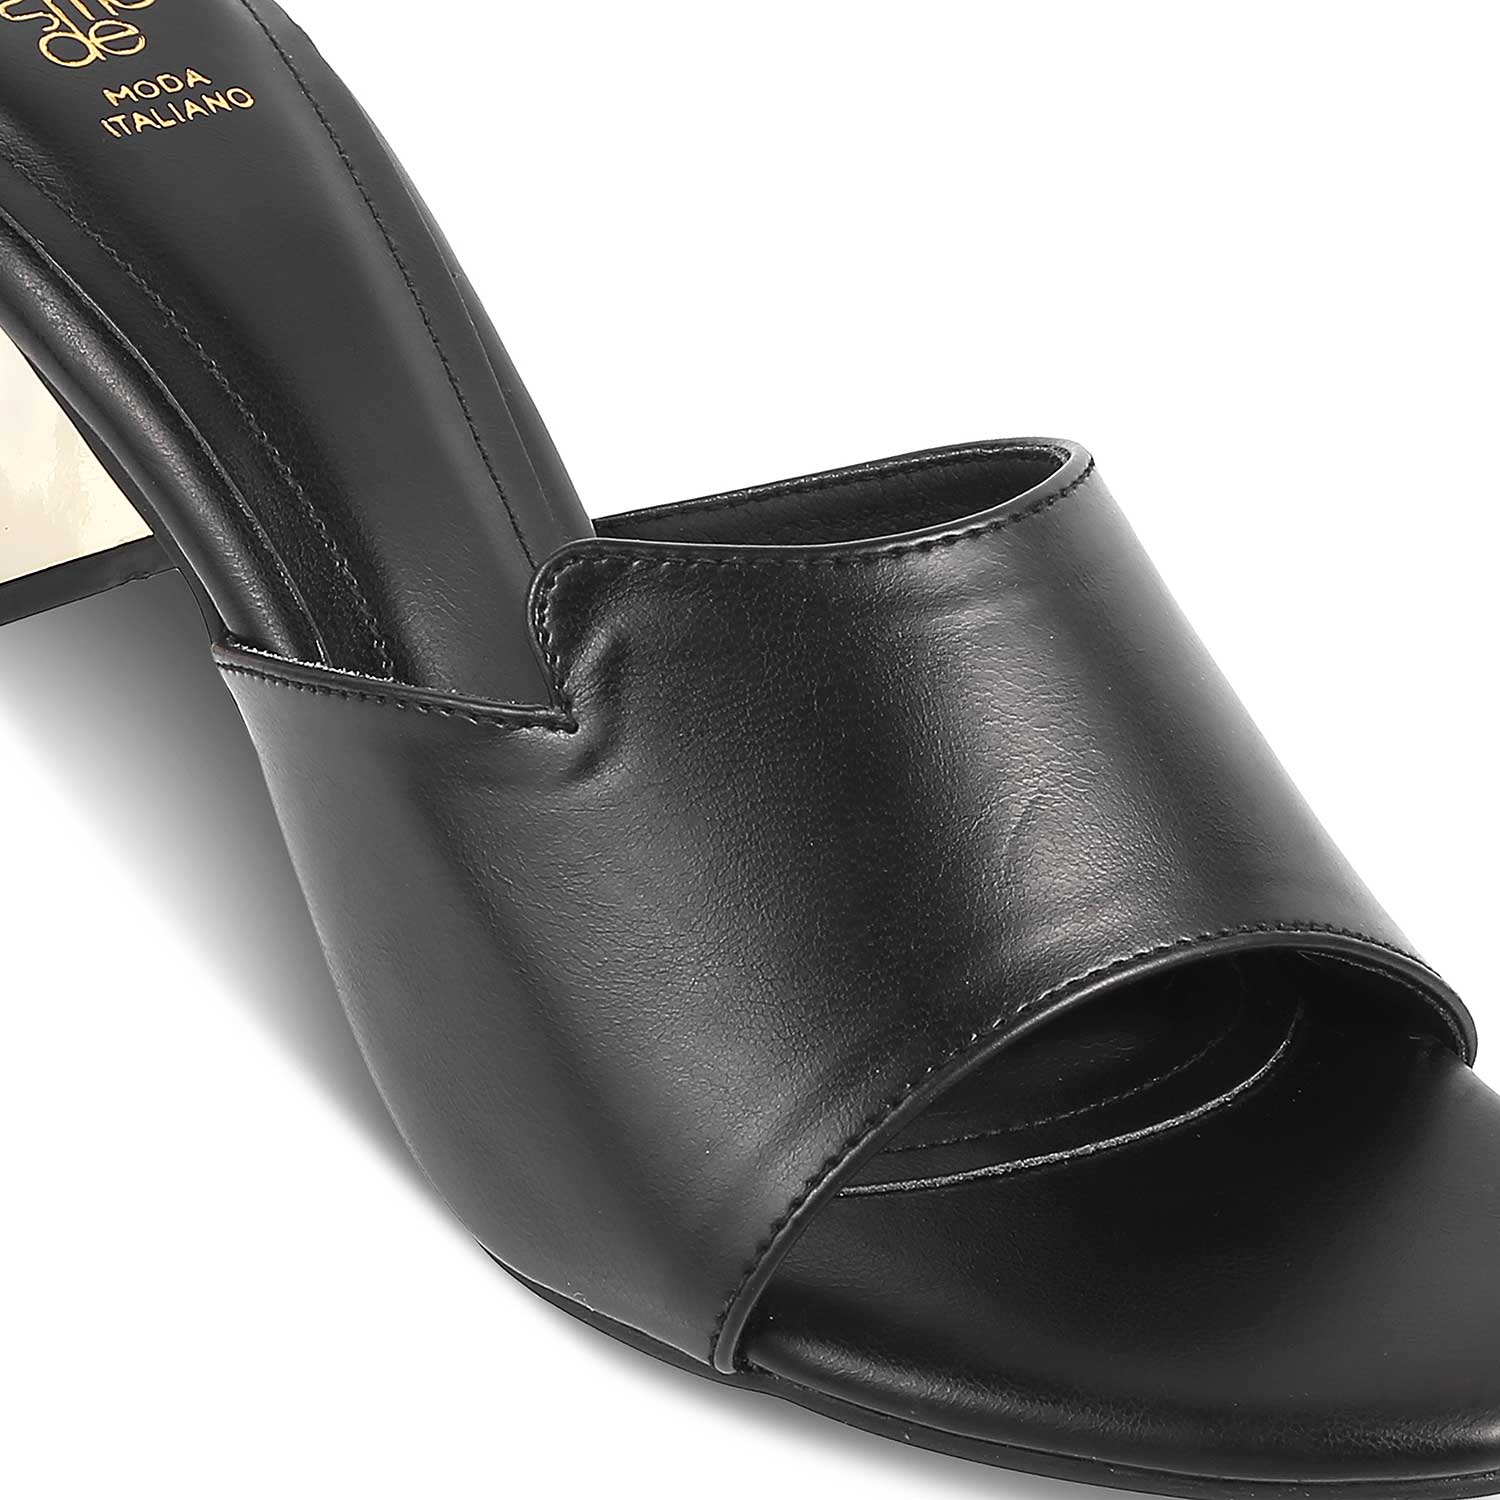 The Cuenca Black Women's Dress Block Heel Sandals Tresmode - Tresmode